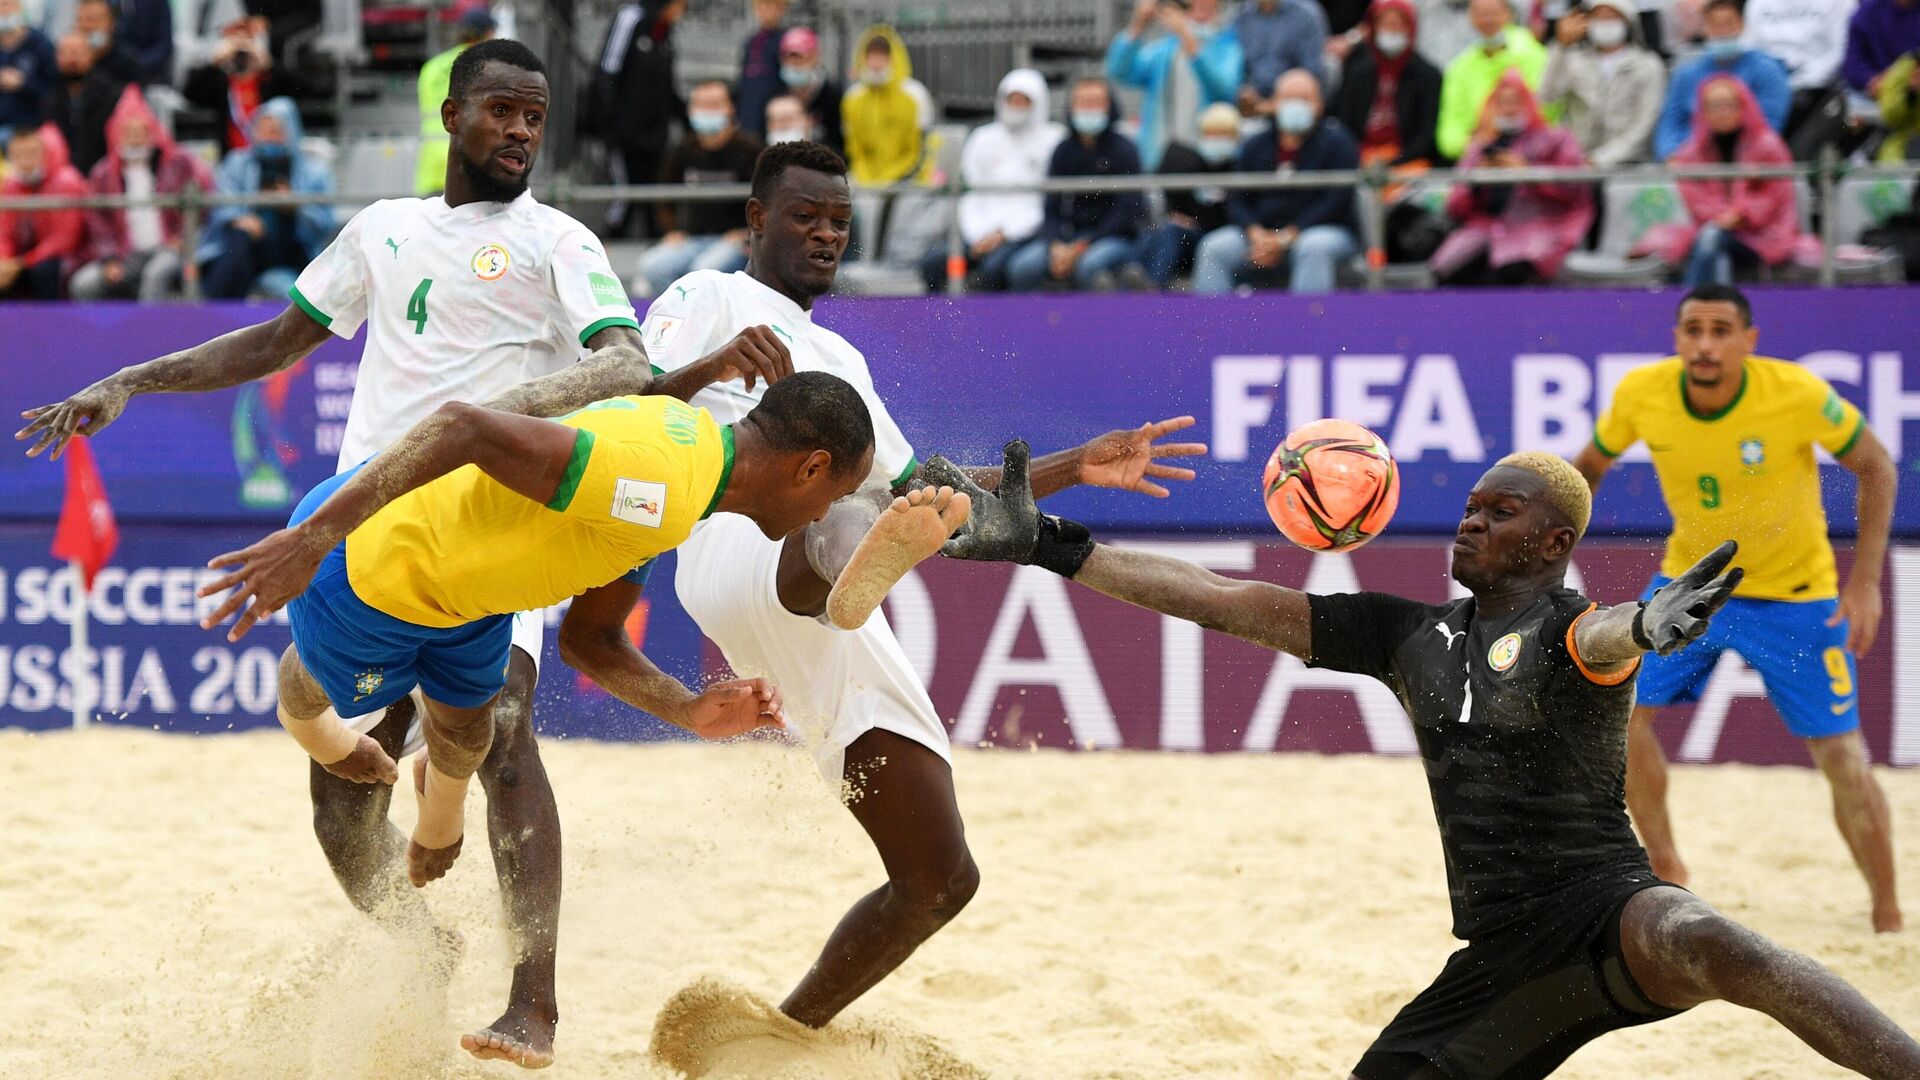 Un partido entre Brasil y Senegal en el Mundial de fútbol playa 2021 - Sputnik Mundo, 1920, 26.08.2021